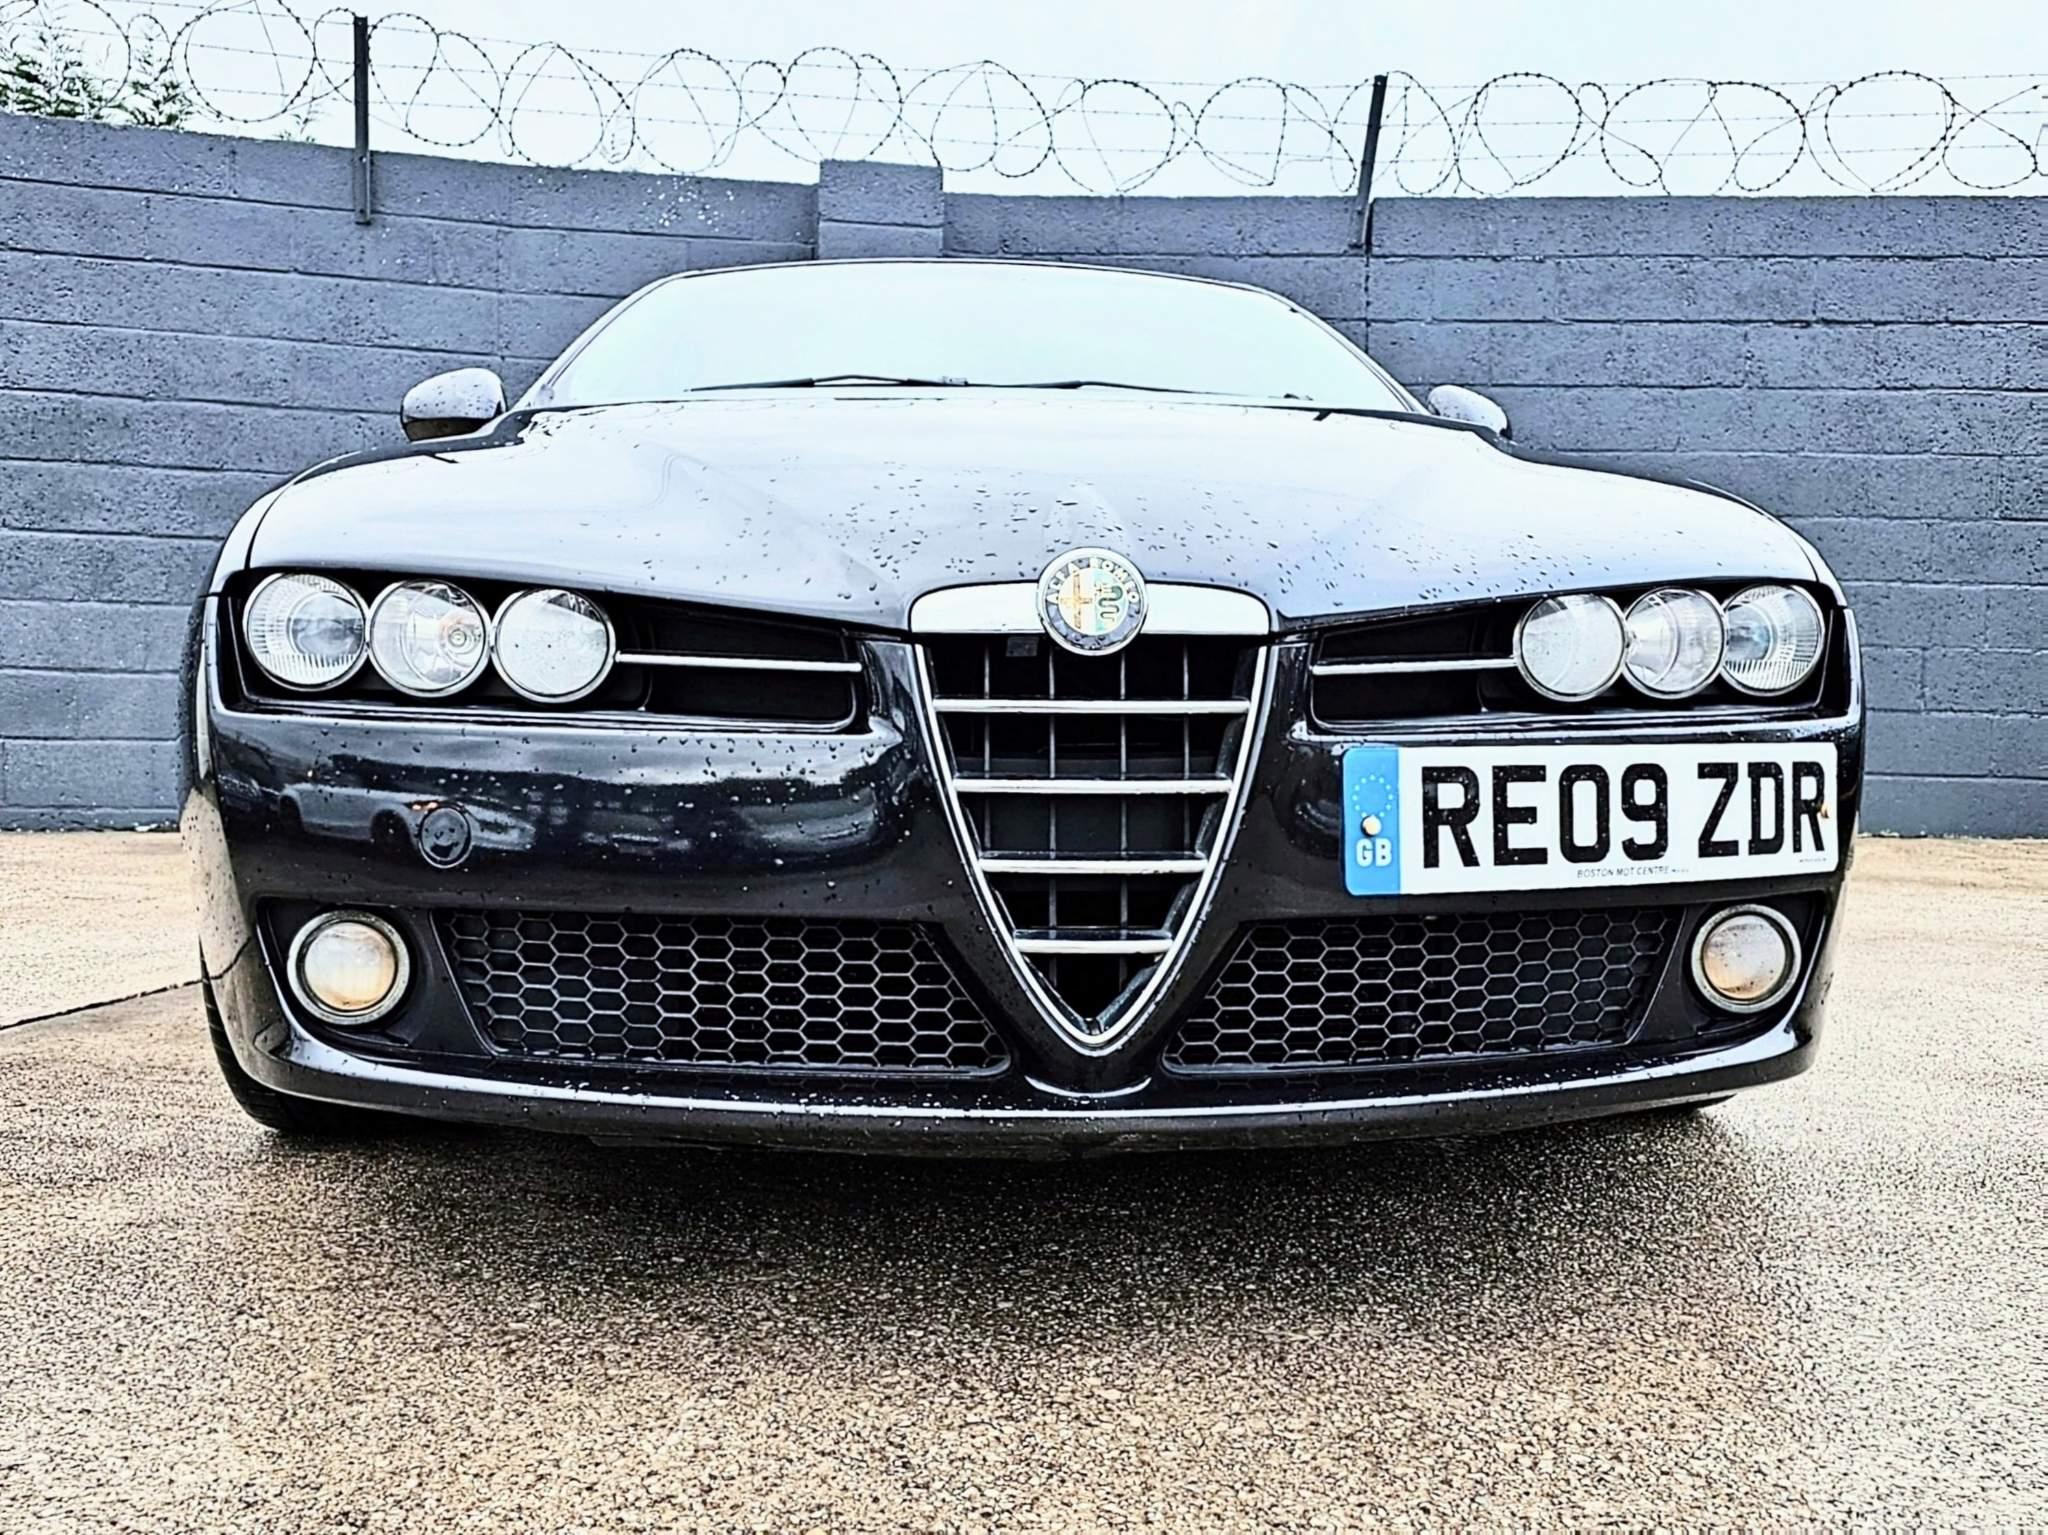 Alfa Romeo 159 (2006 - 2009) used car review, Car review